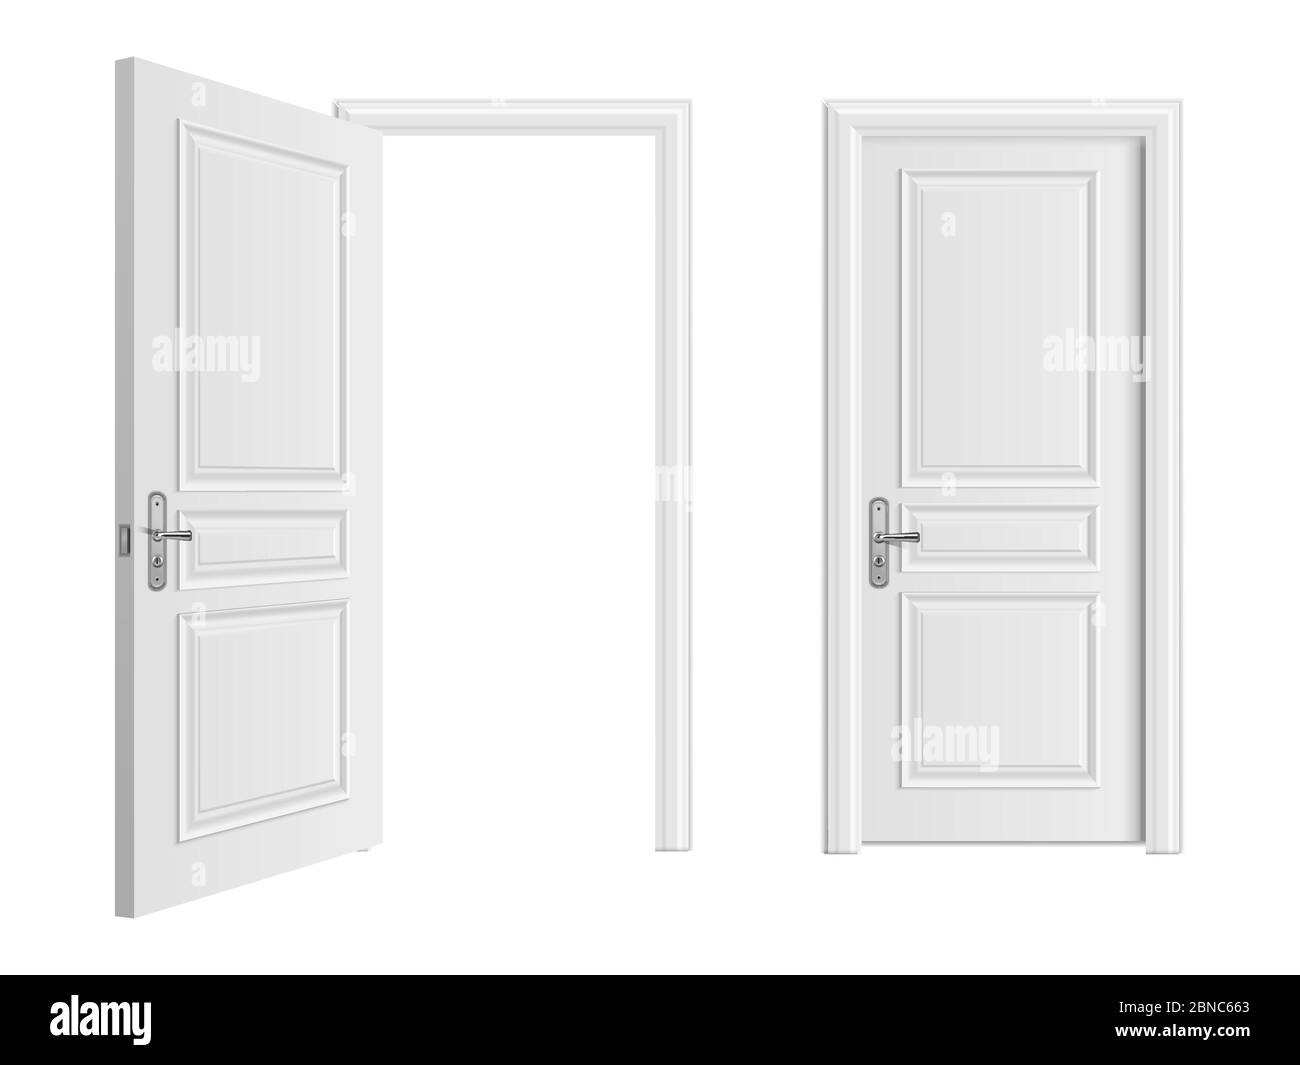 Offener und geschlossener weißer Eingang realistische Tür isoliert auf weißem Hintergrund. Tür zu Haus oder Raum, Eingang Tür geschlossen Illustration Stock Vektor